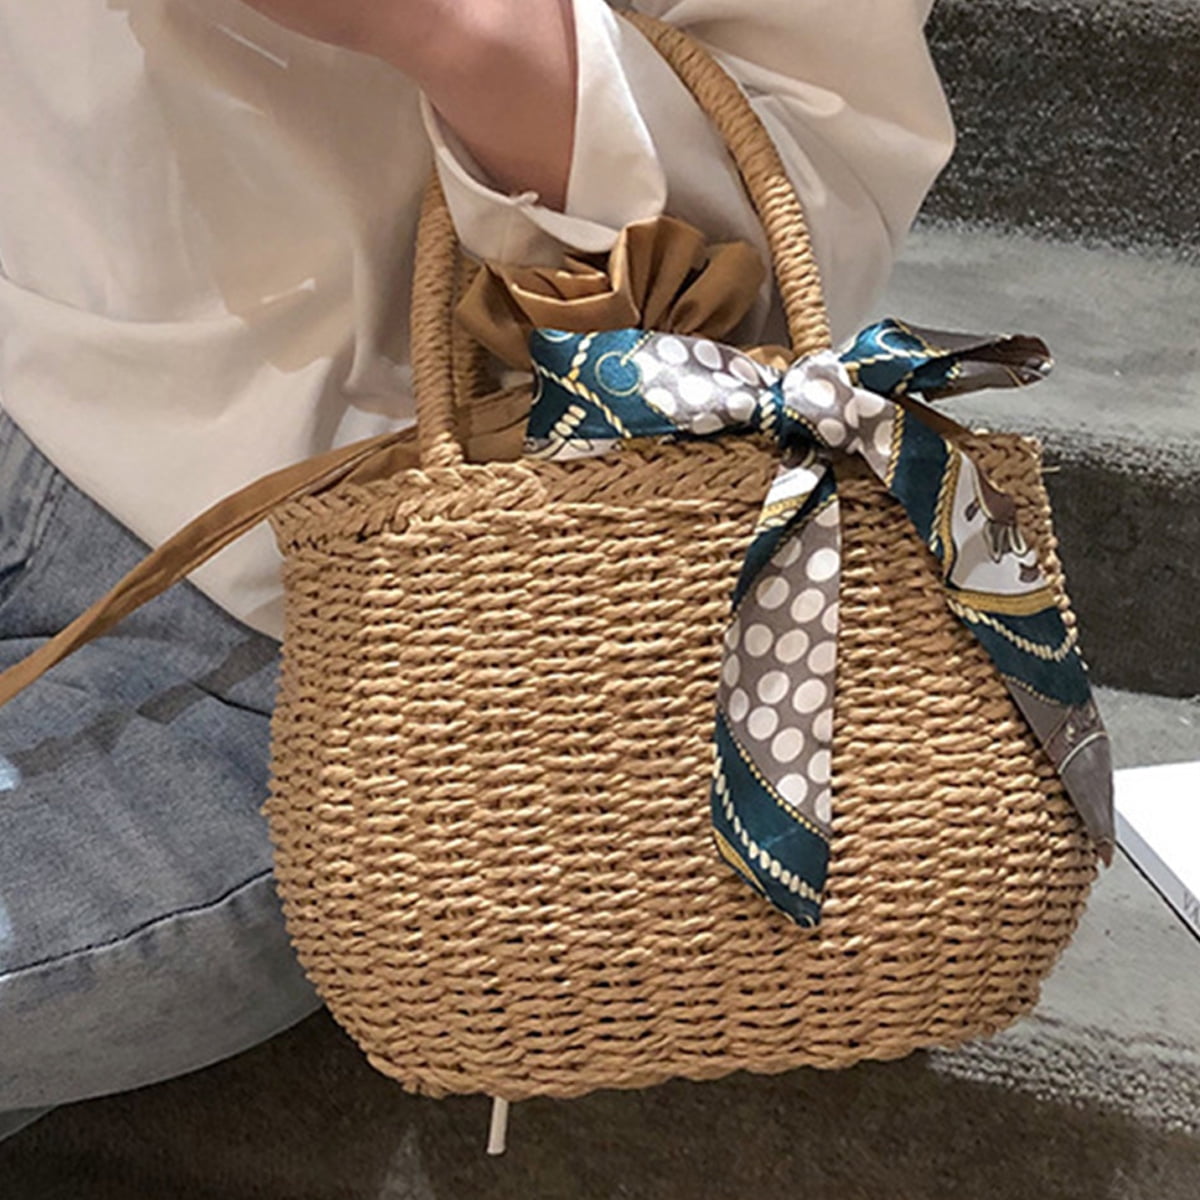 5 Handbag For Women: Trendy Handbags For Women To Bookmark For Summer ASAP